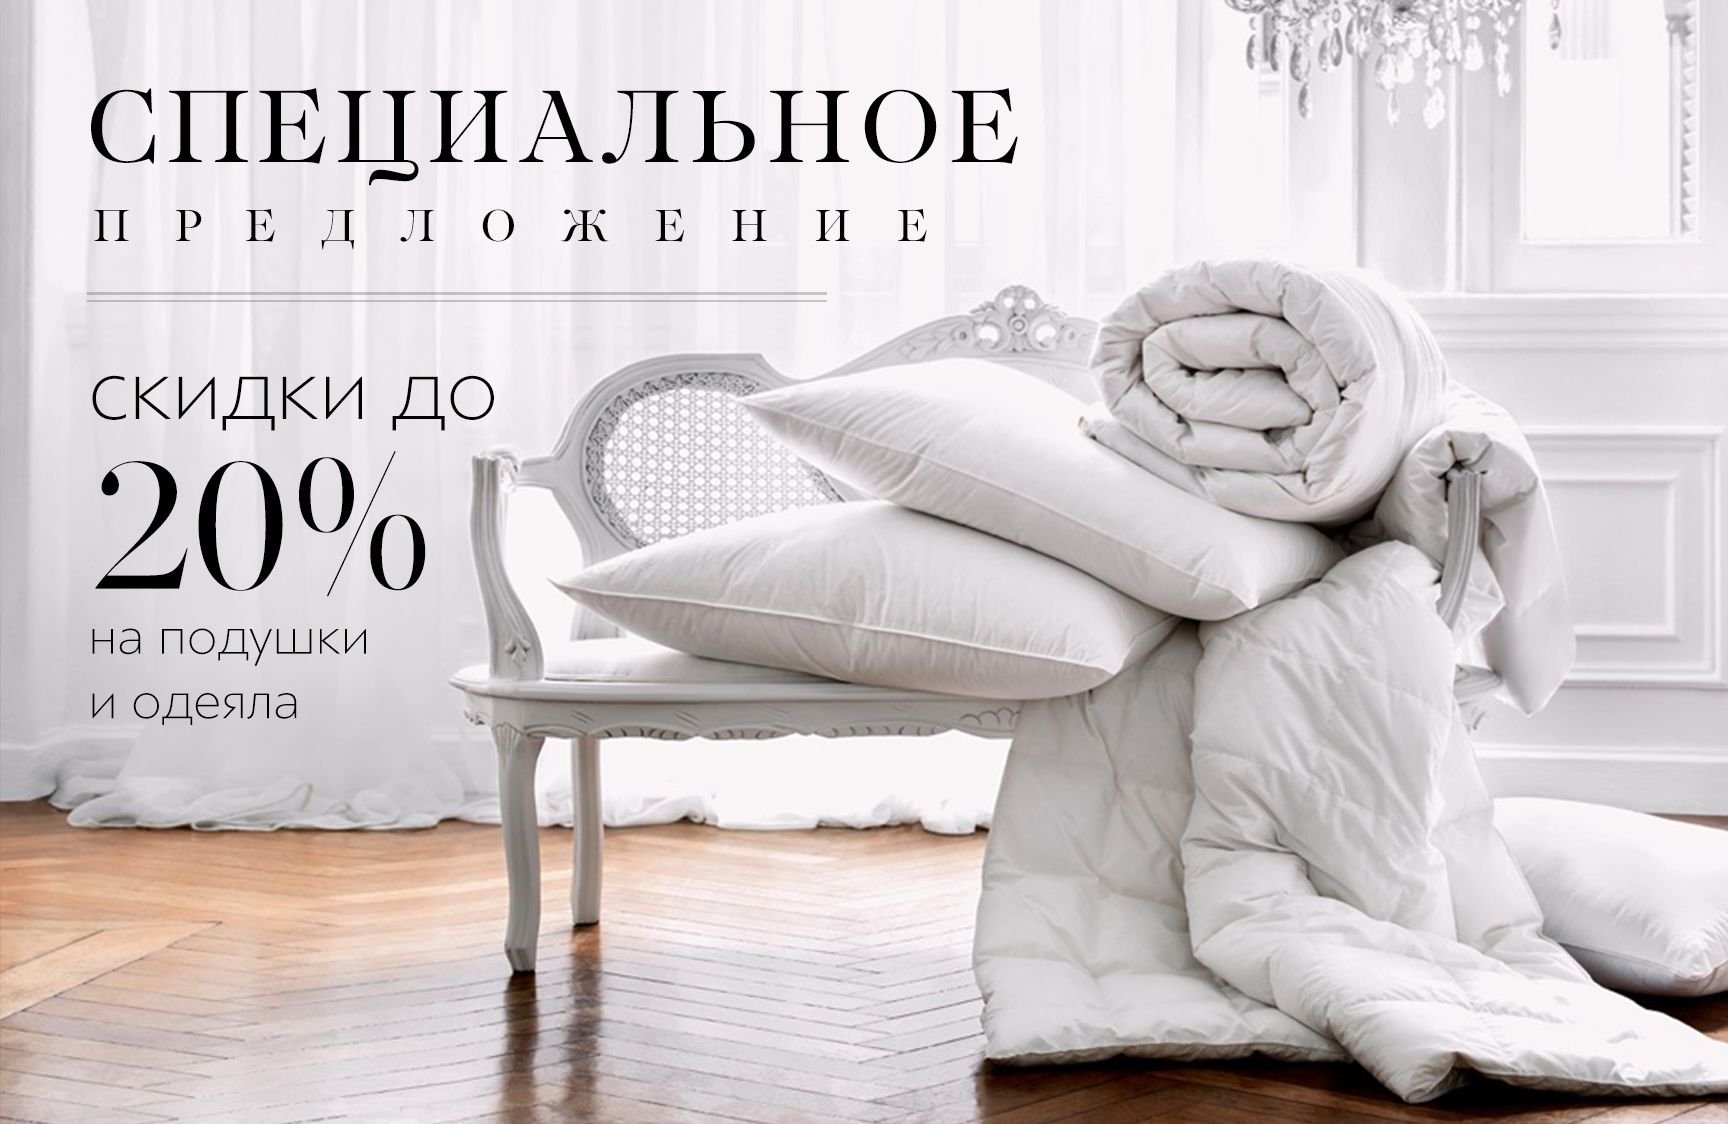 Реклама подушек и одеял